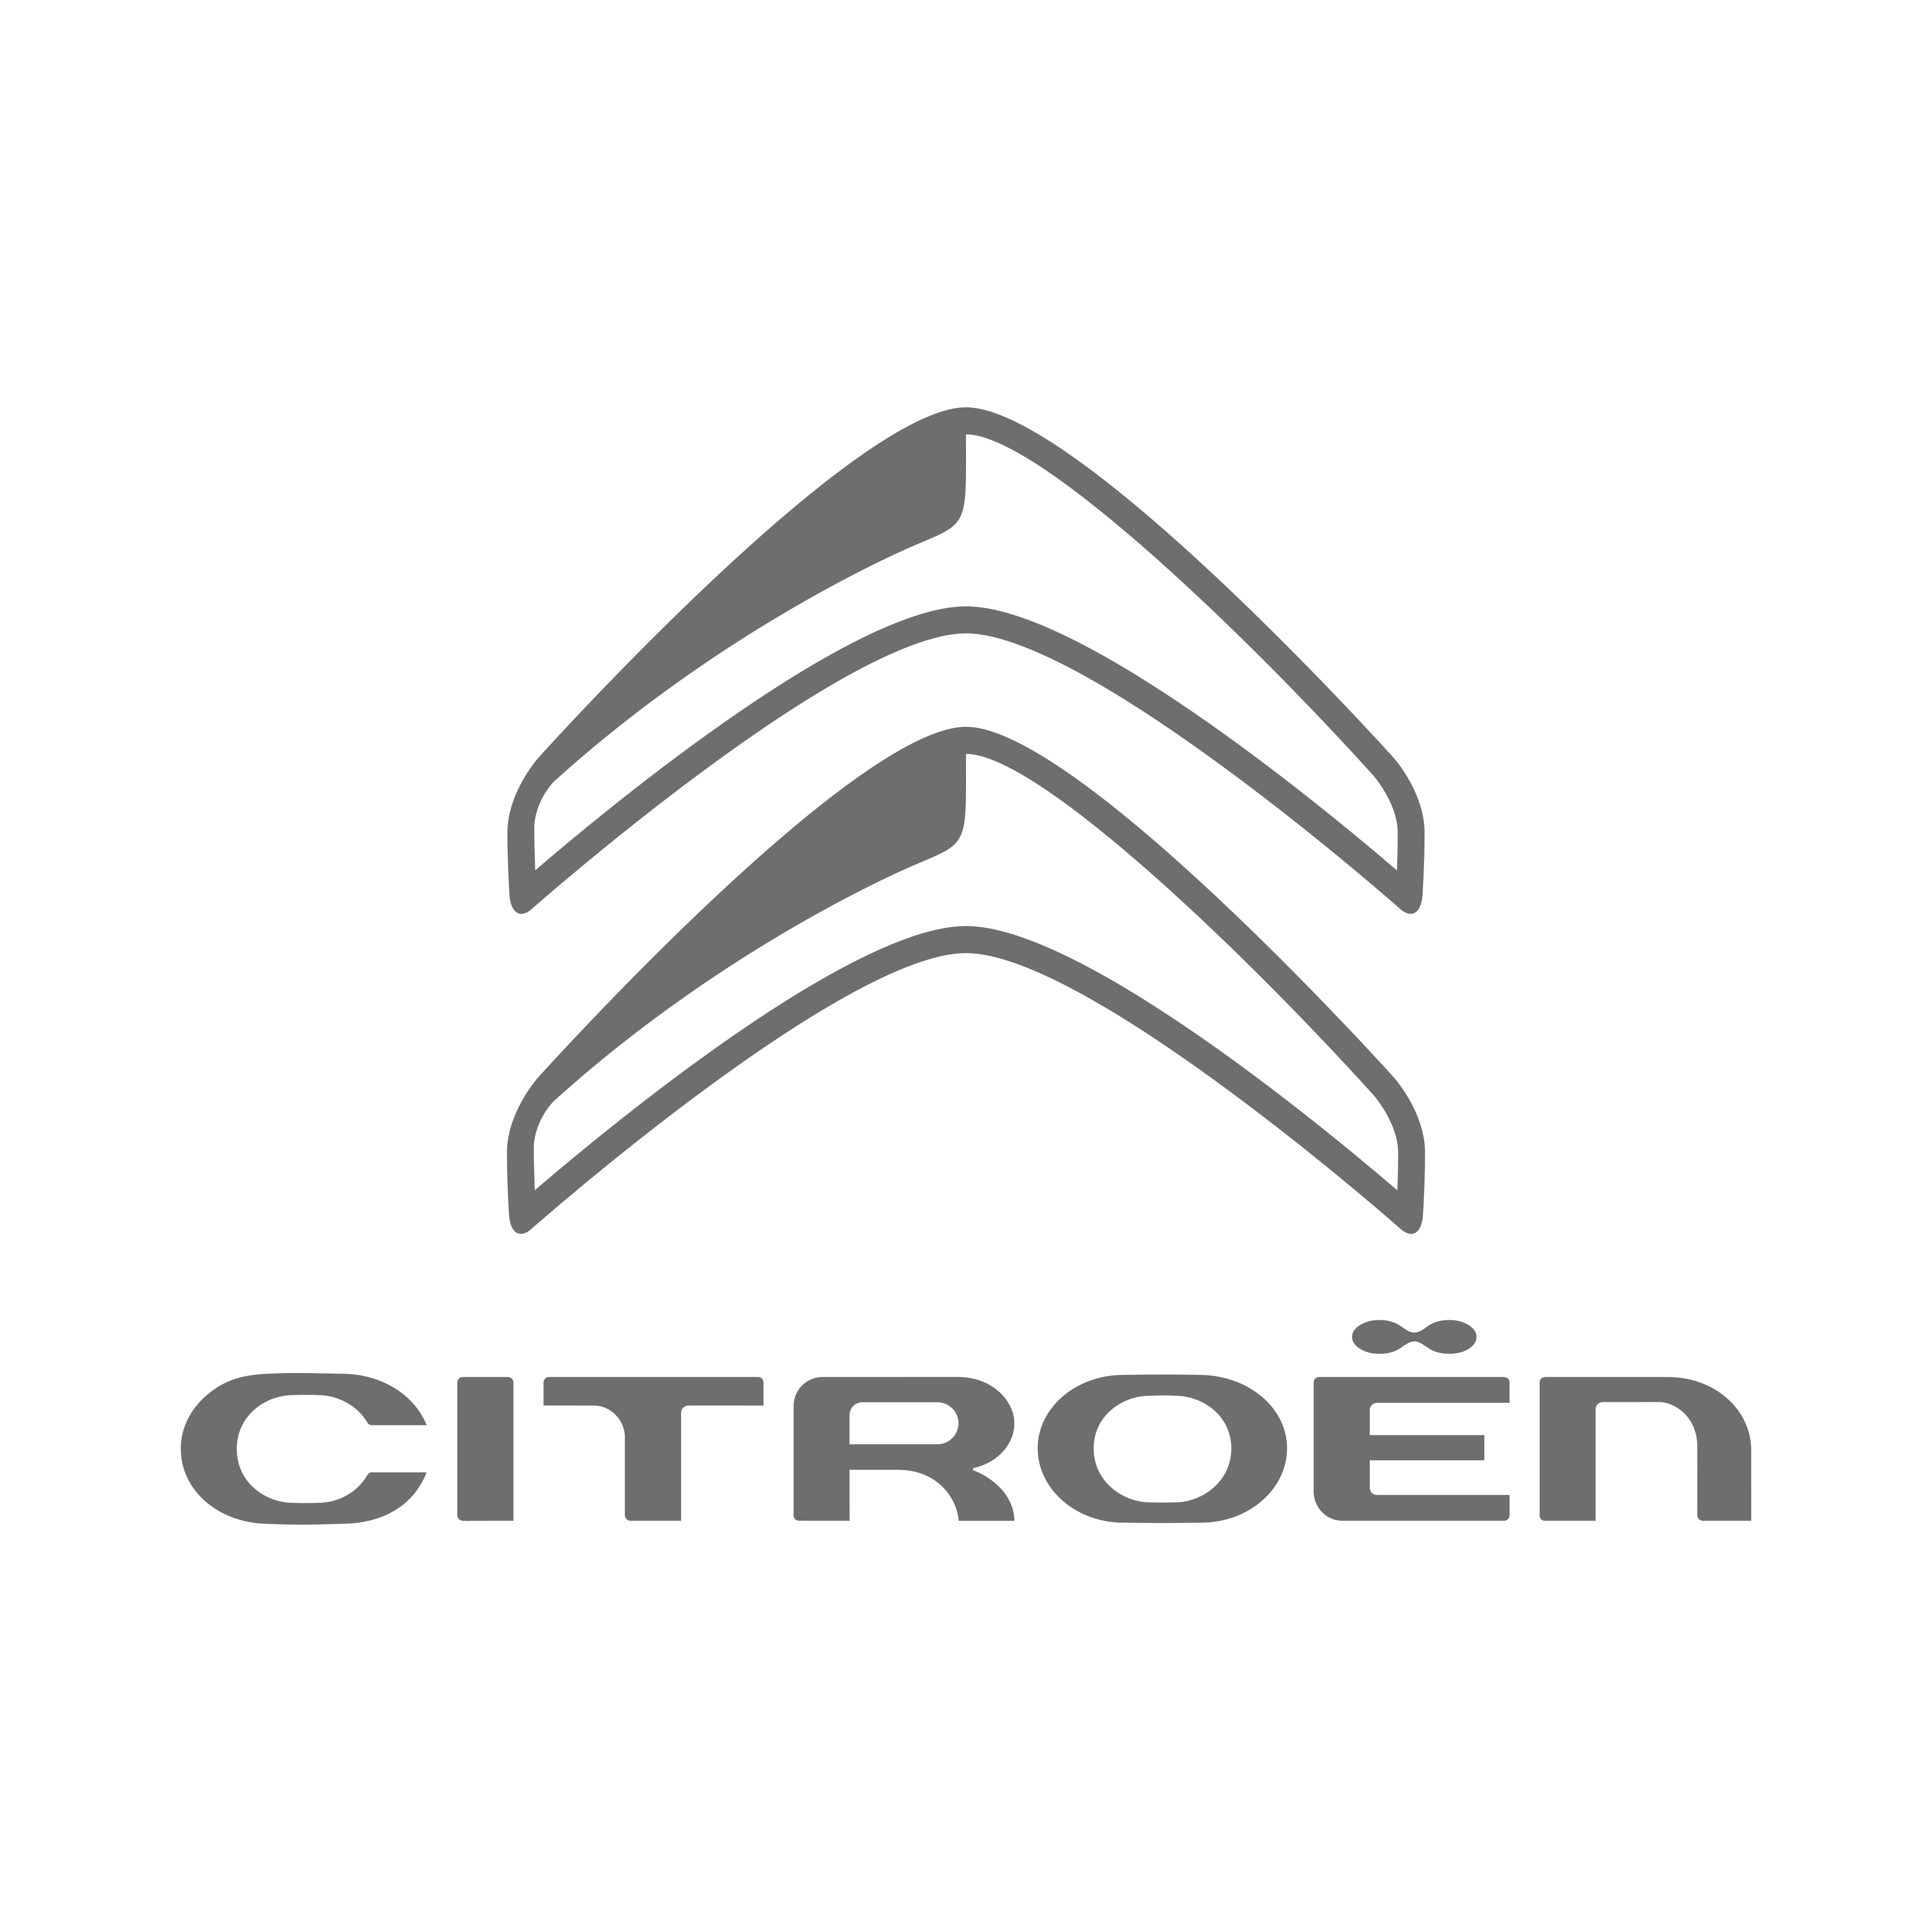 citroen logo 5 - Citroën Logo